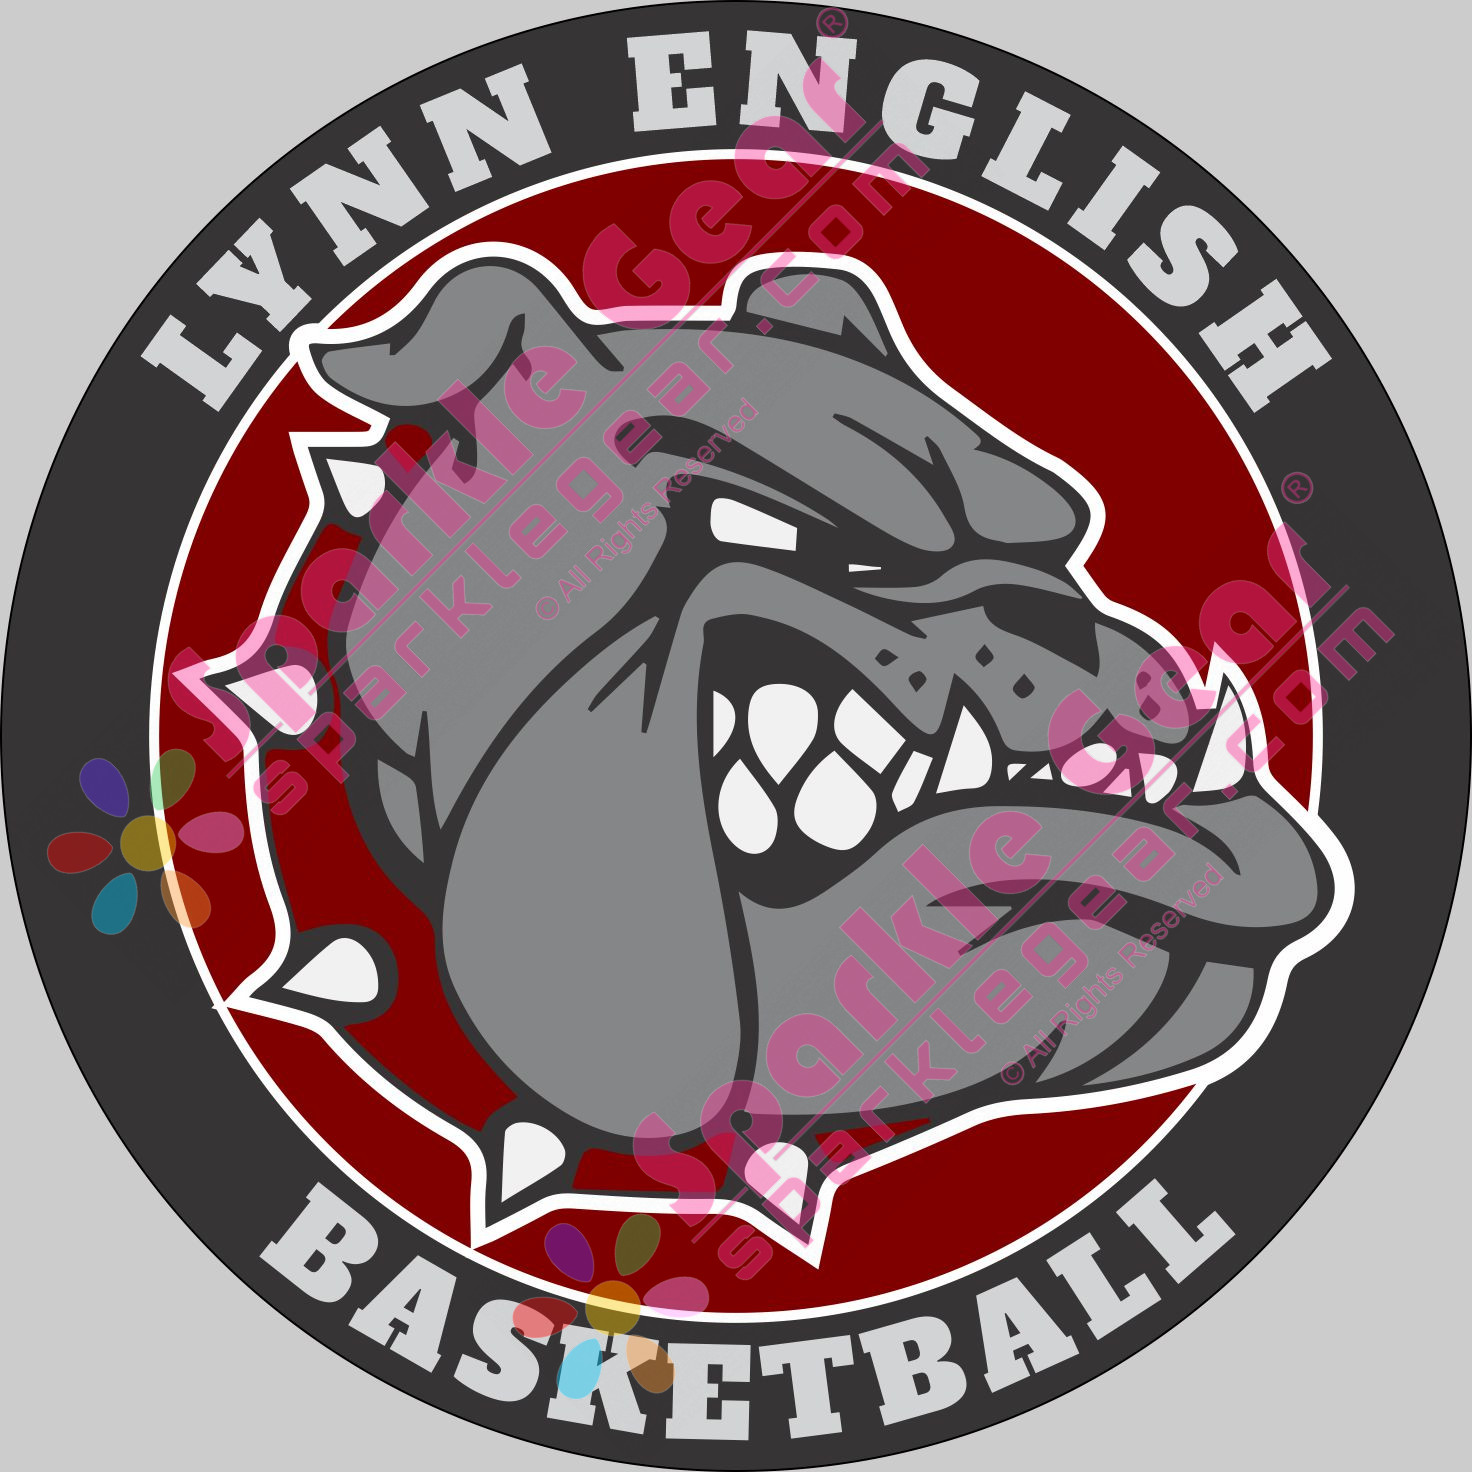 Lynn English Basketball